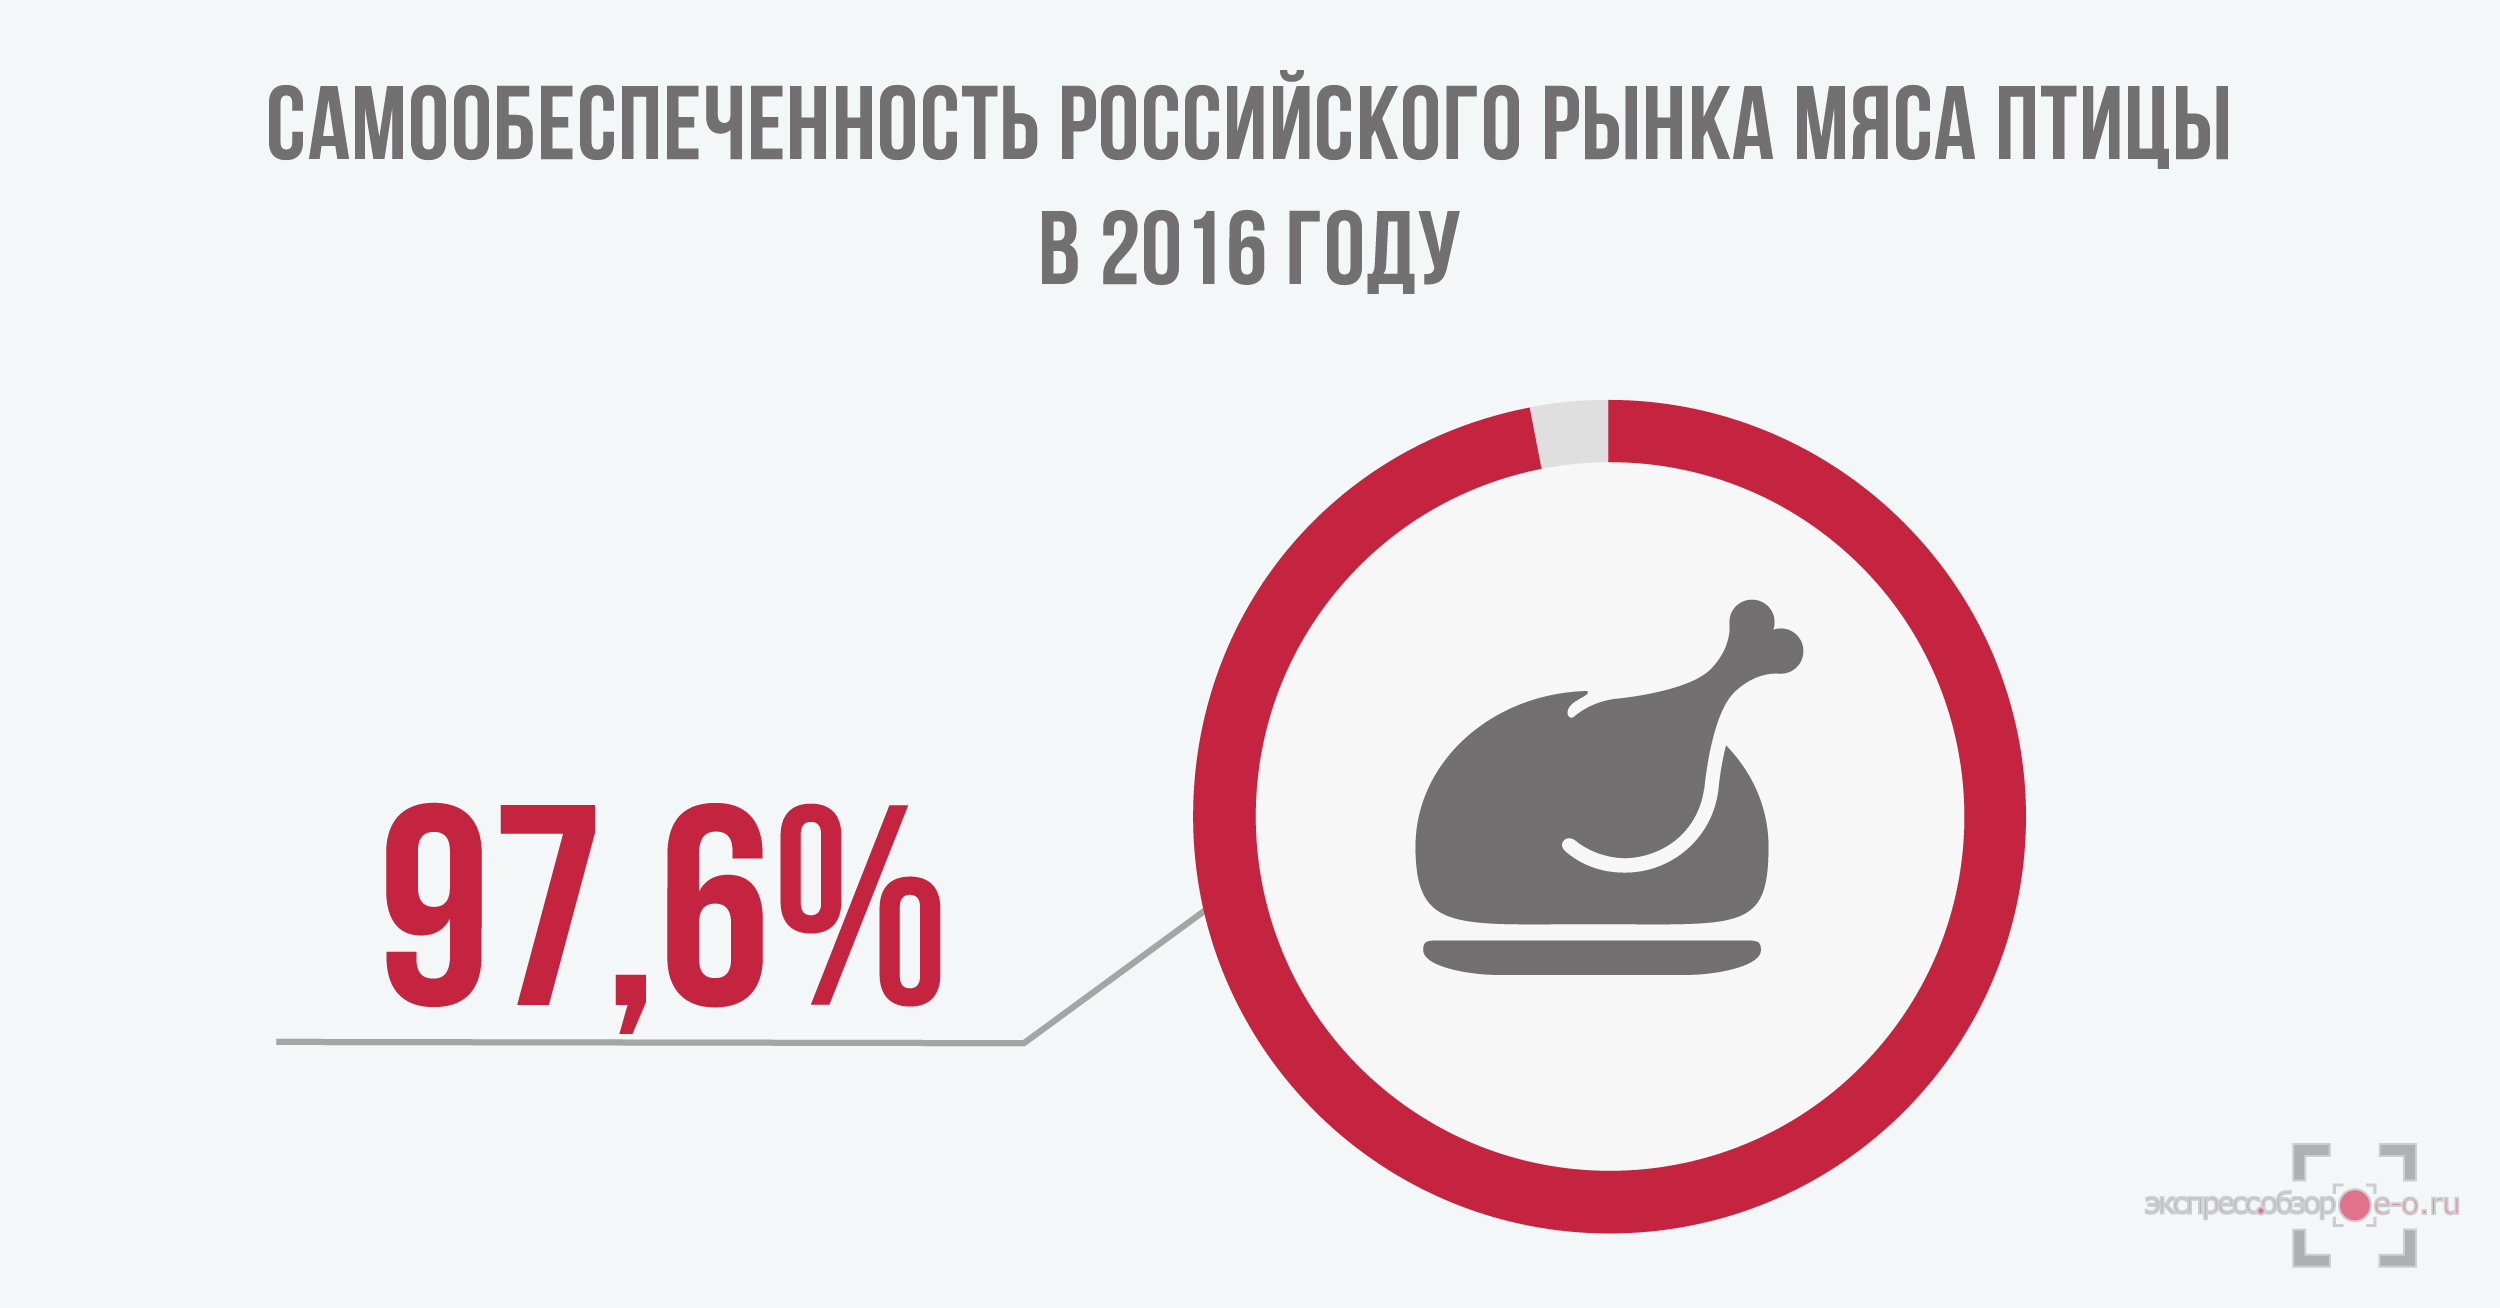 Рынок мяса птицы в России в 2016 году